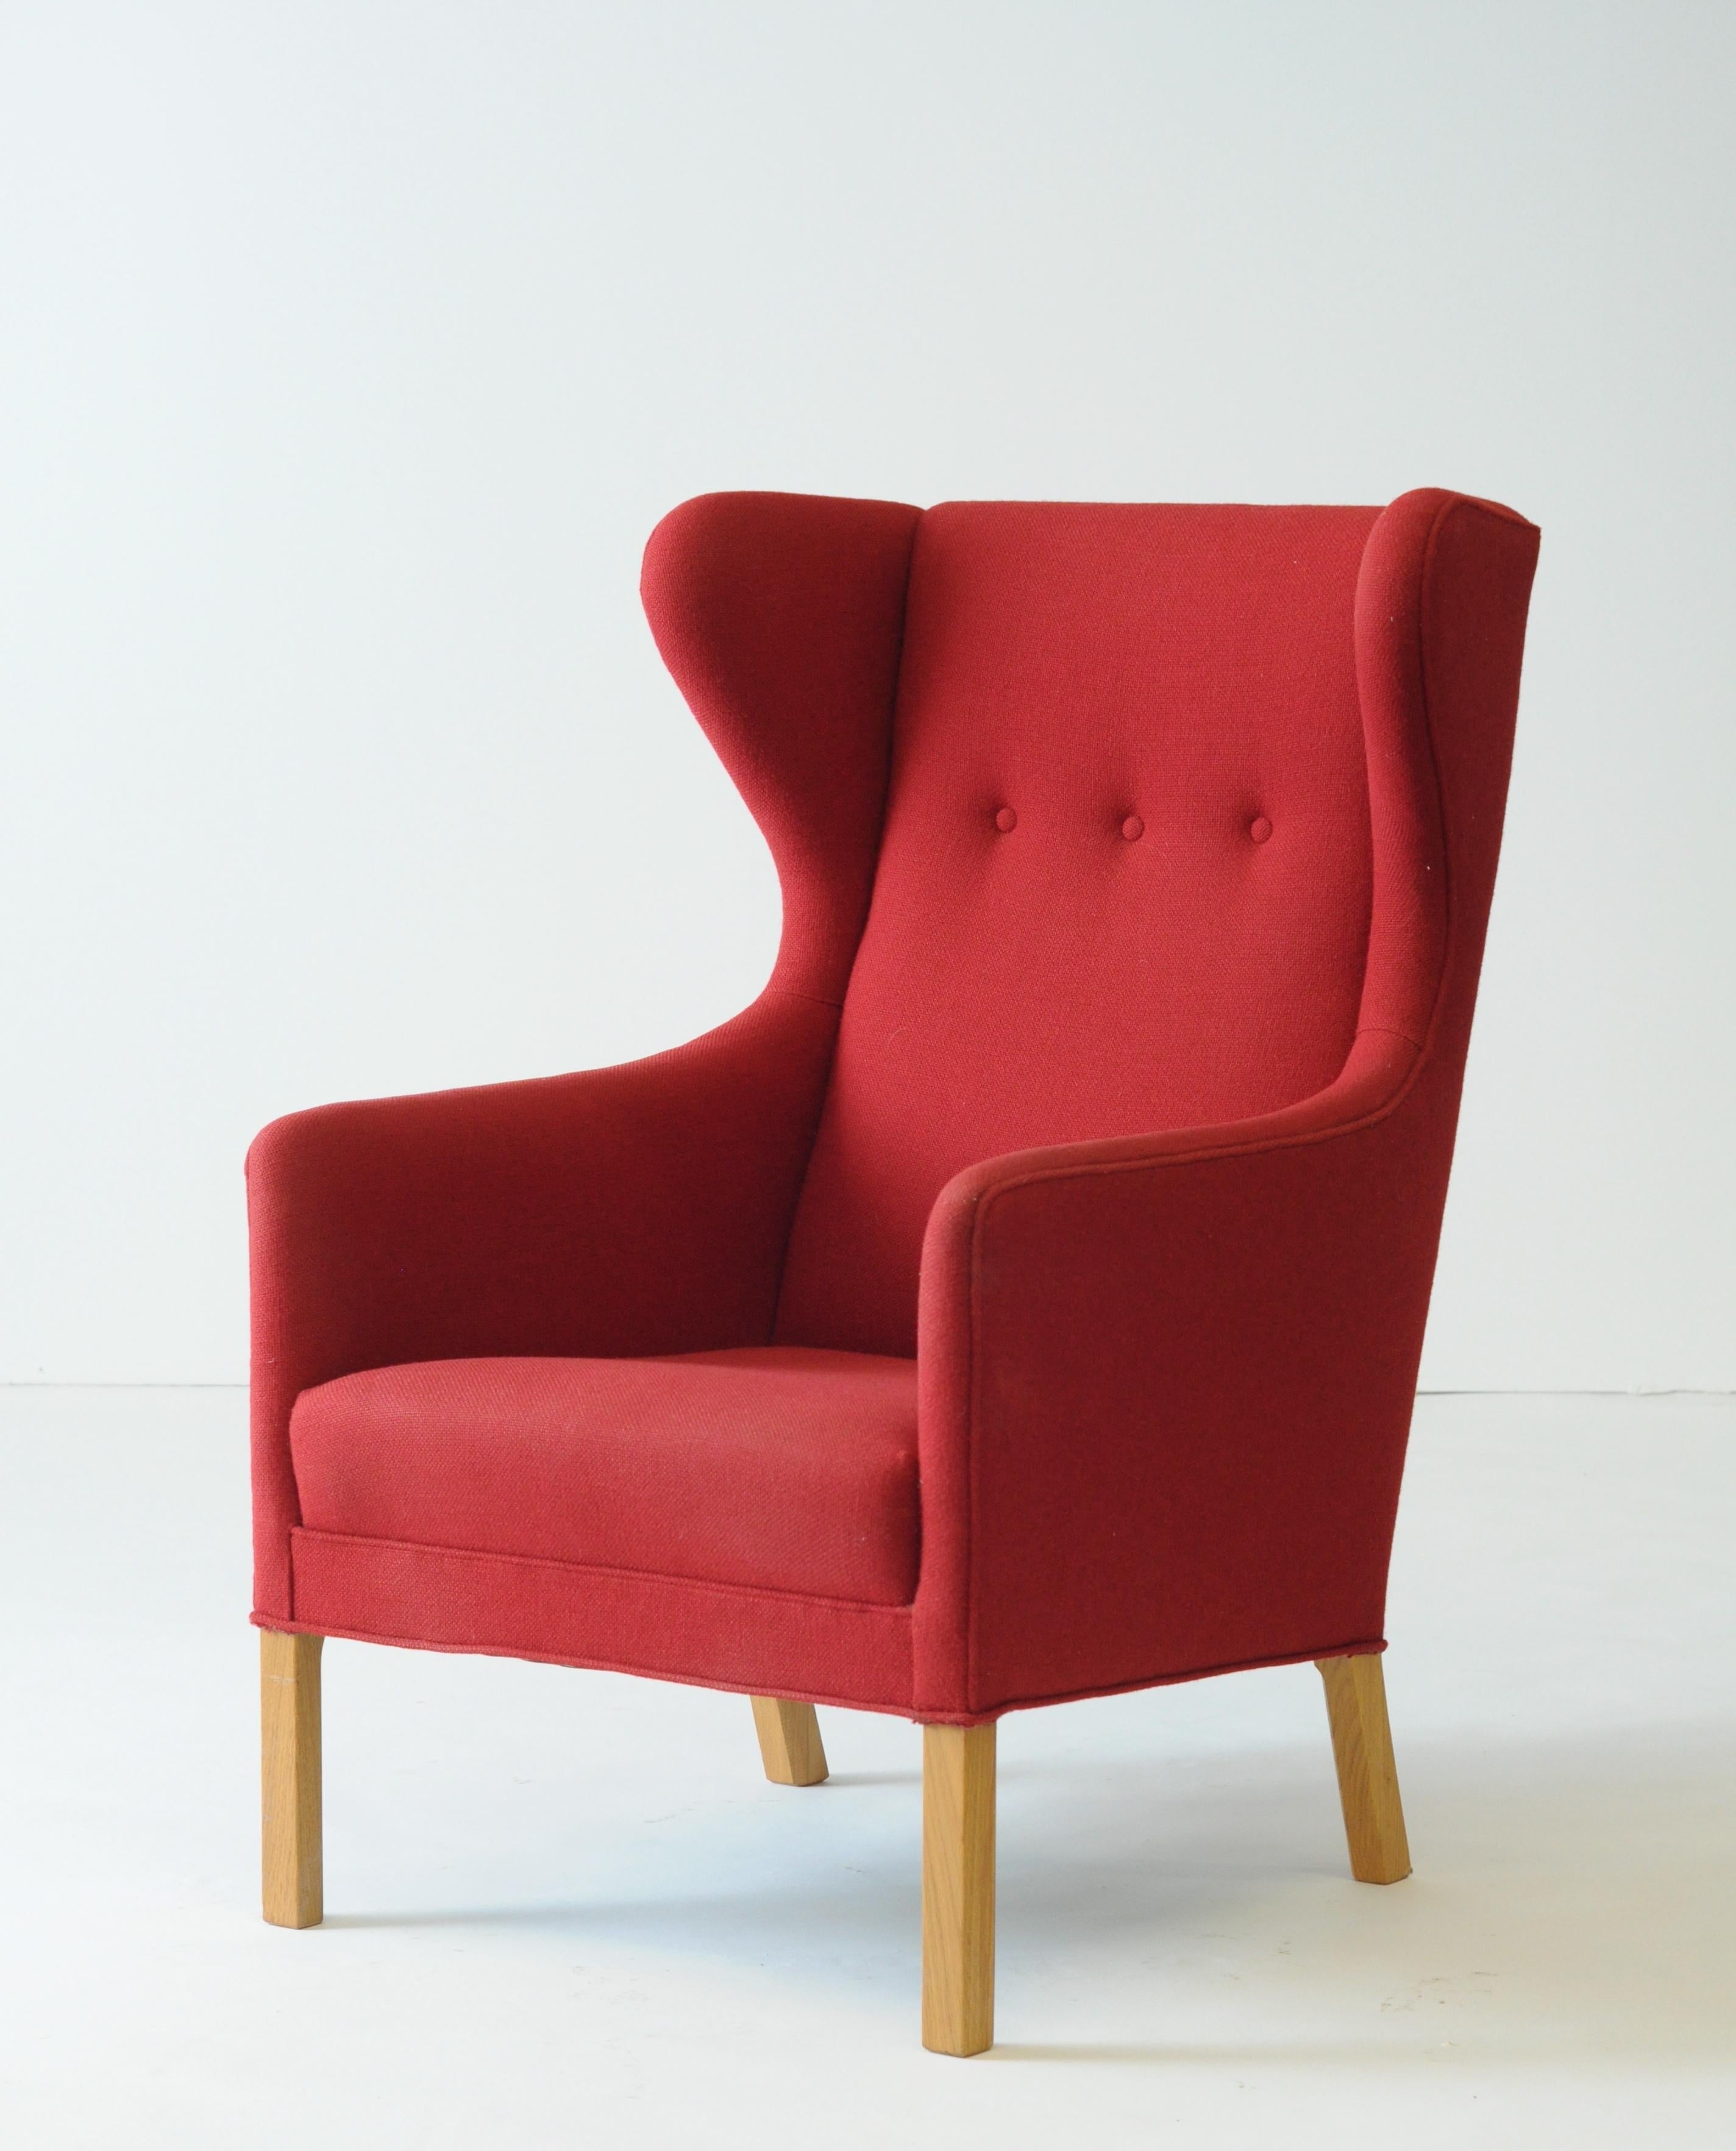 A stunning wingback chair designed by Ejnar Larsen for the Morten Olsen, 